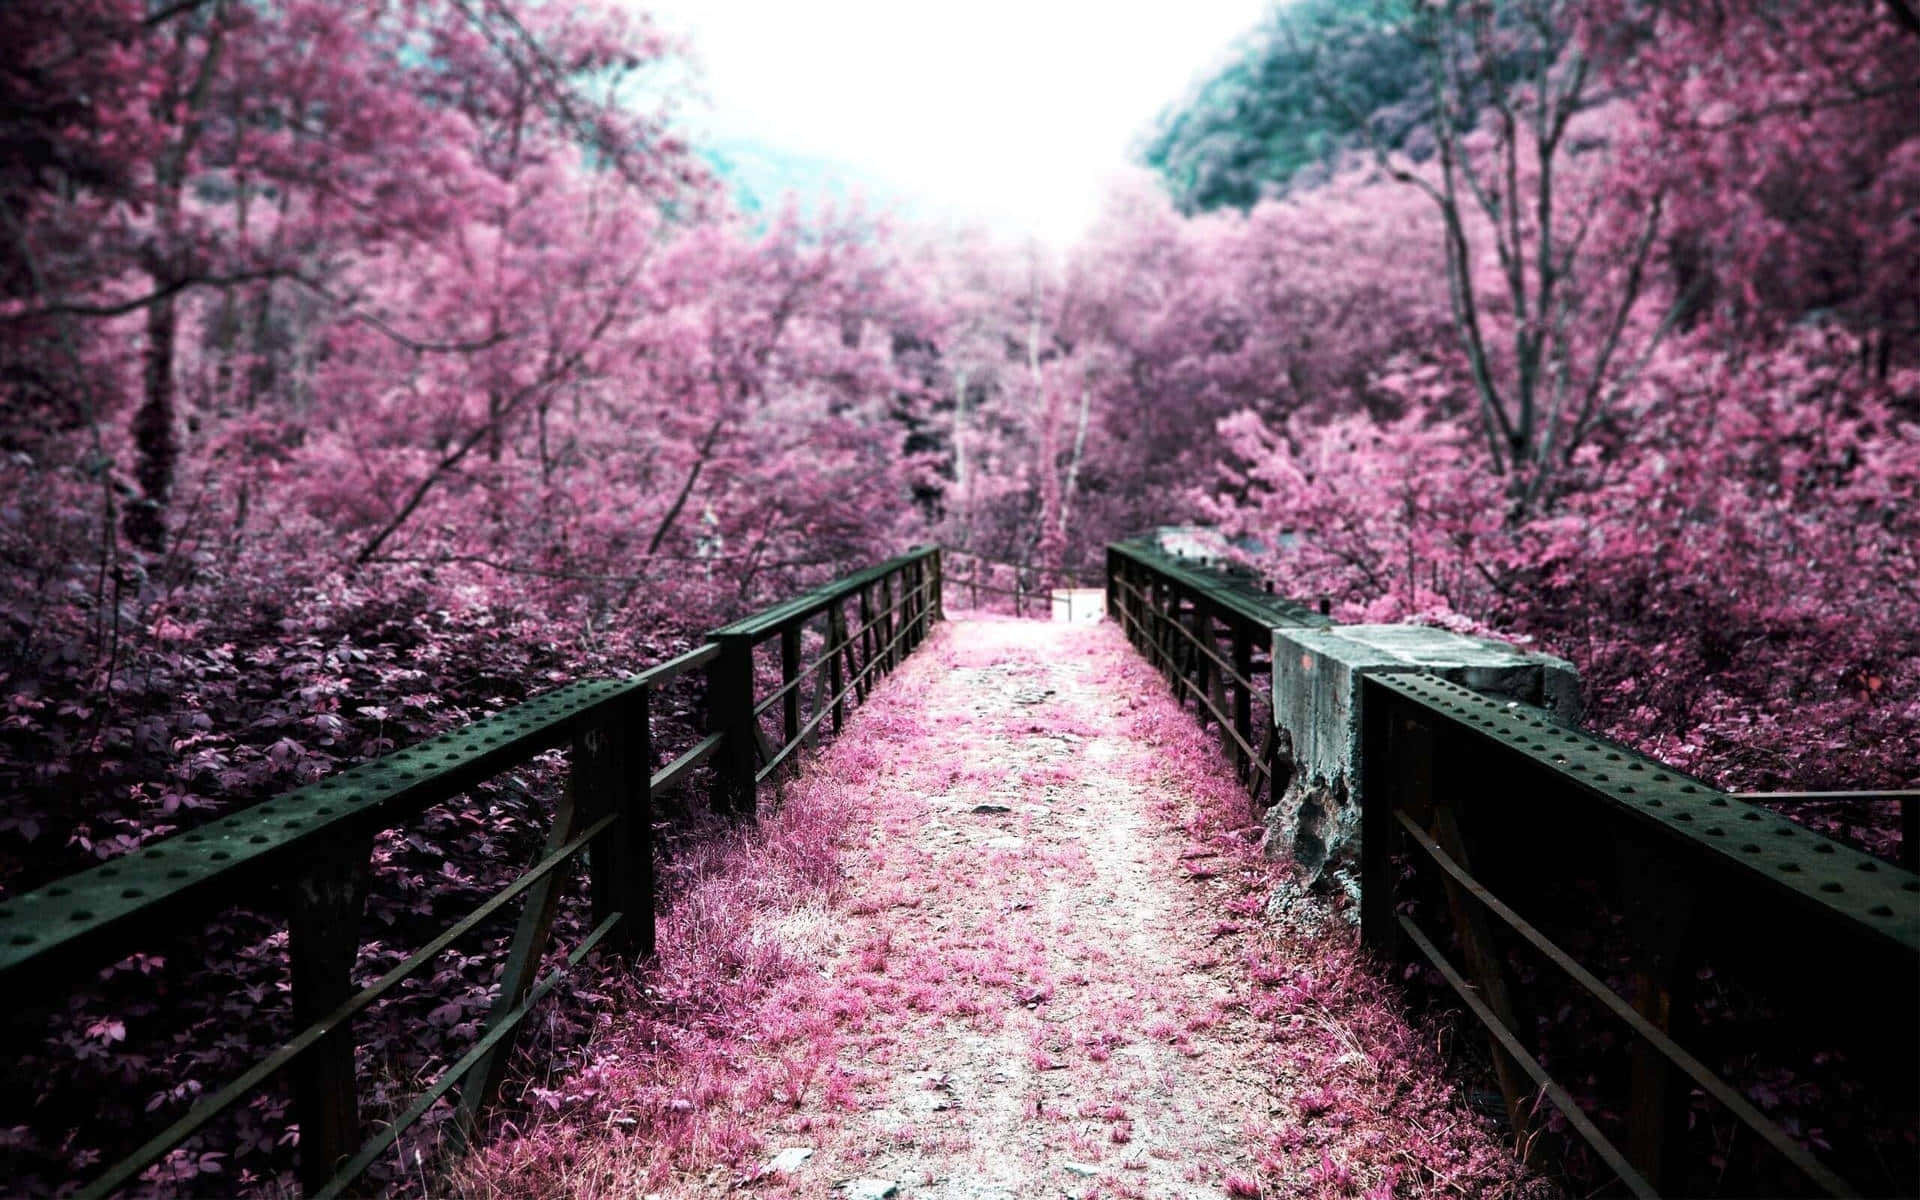 Daun Paseo Por La Orilla Del Río Y Disfruta De La Belleza De La Floración De Sakura. Fondo de pantalla